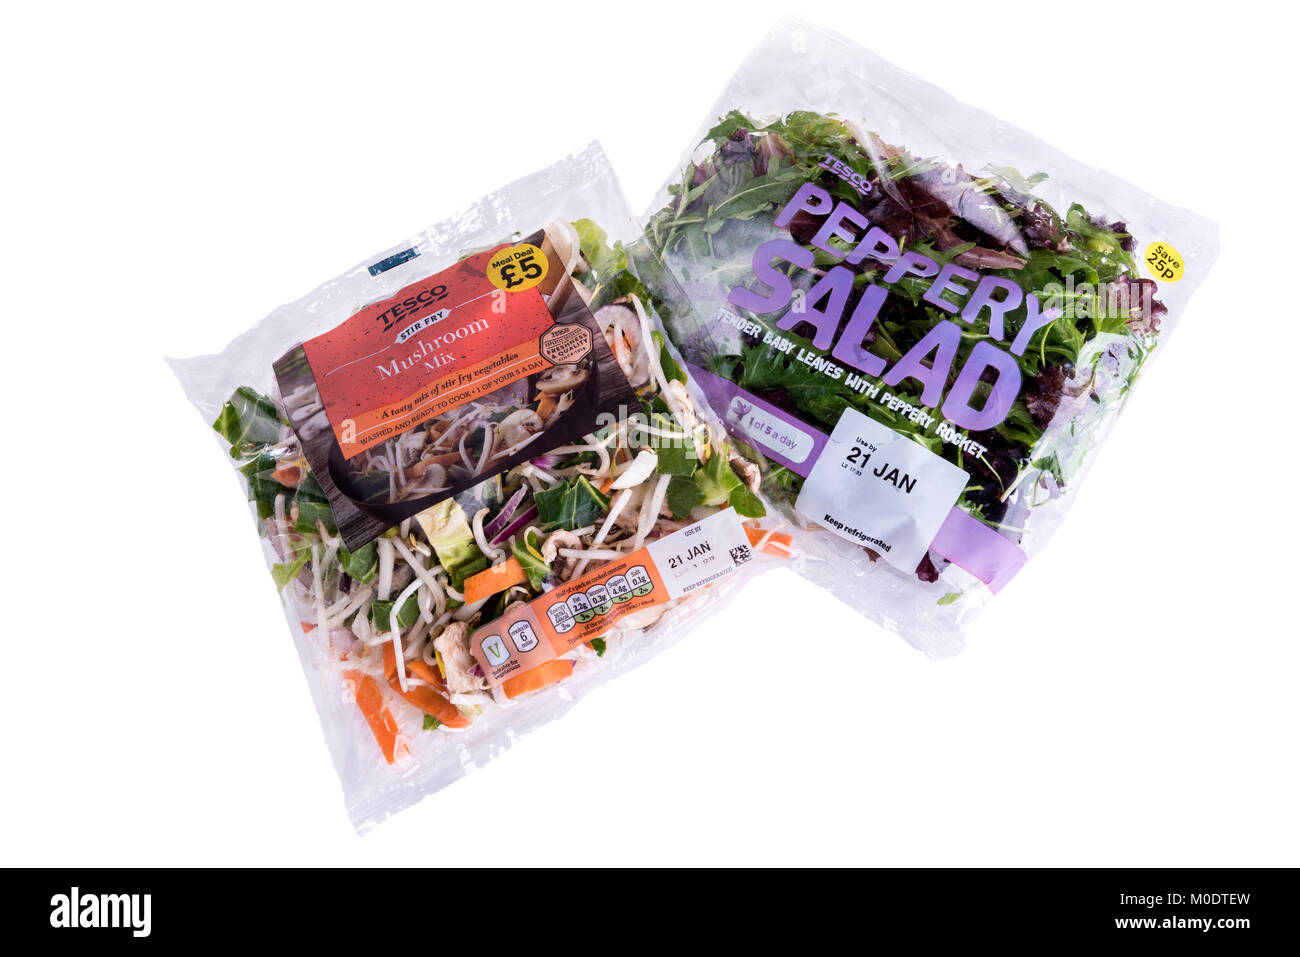 Zwei Beutel mit Tesco vorbereiteten Salat mischen, Supermarkt Verpackungen aus Kunststoff. Stockfoto